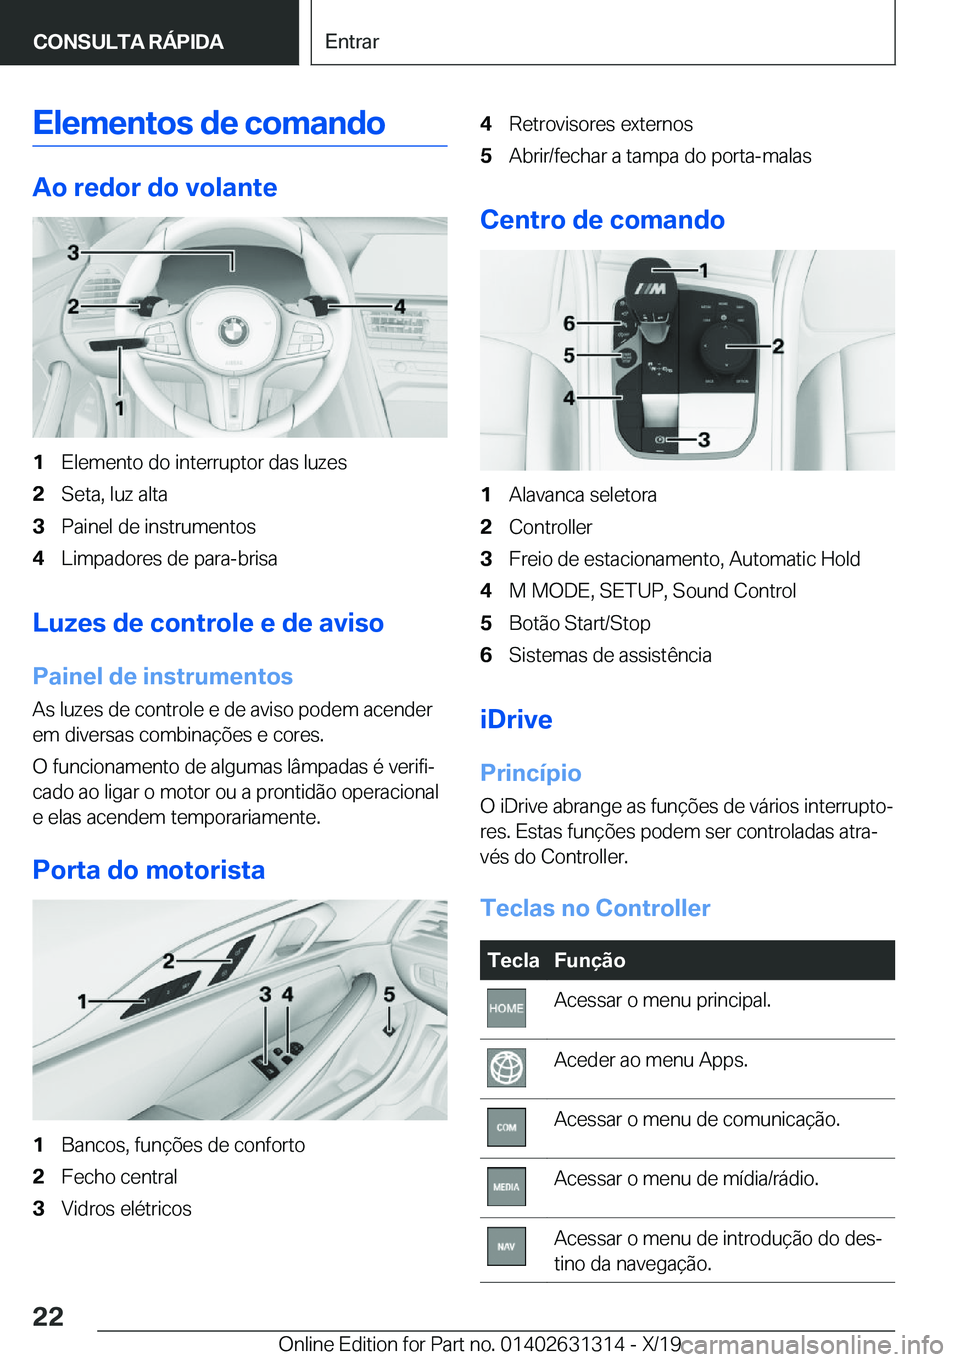 BMW M8 2020  Manual do condutor (in Portuguese) �E�l�e�m�e�n�t�o�s��d�e��c�o�m�a�n�d�o
�A�o��r�e�d�o�r��d�o��v�o�l�a�n�t�e
�1�E�l�e�m�e�n�t�o��d�o��i�n�t�e�r�r�u�p�t�o�r��d�a�s��l�u�z�e�s�2�S�e�t�a�,��l�u�z��a�l�t�a�3�P�a�i�n�e�l��d�e�